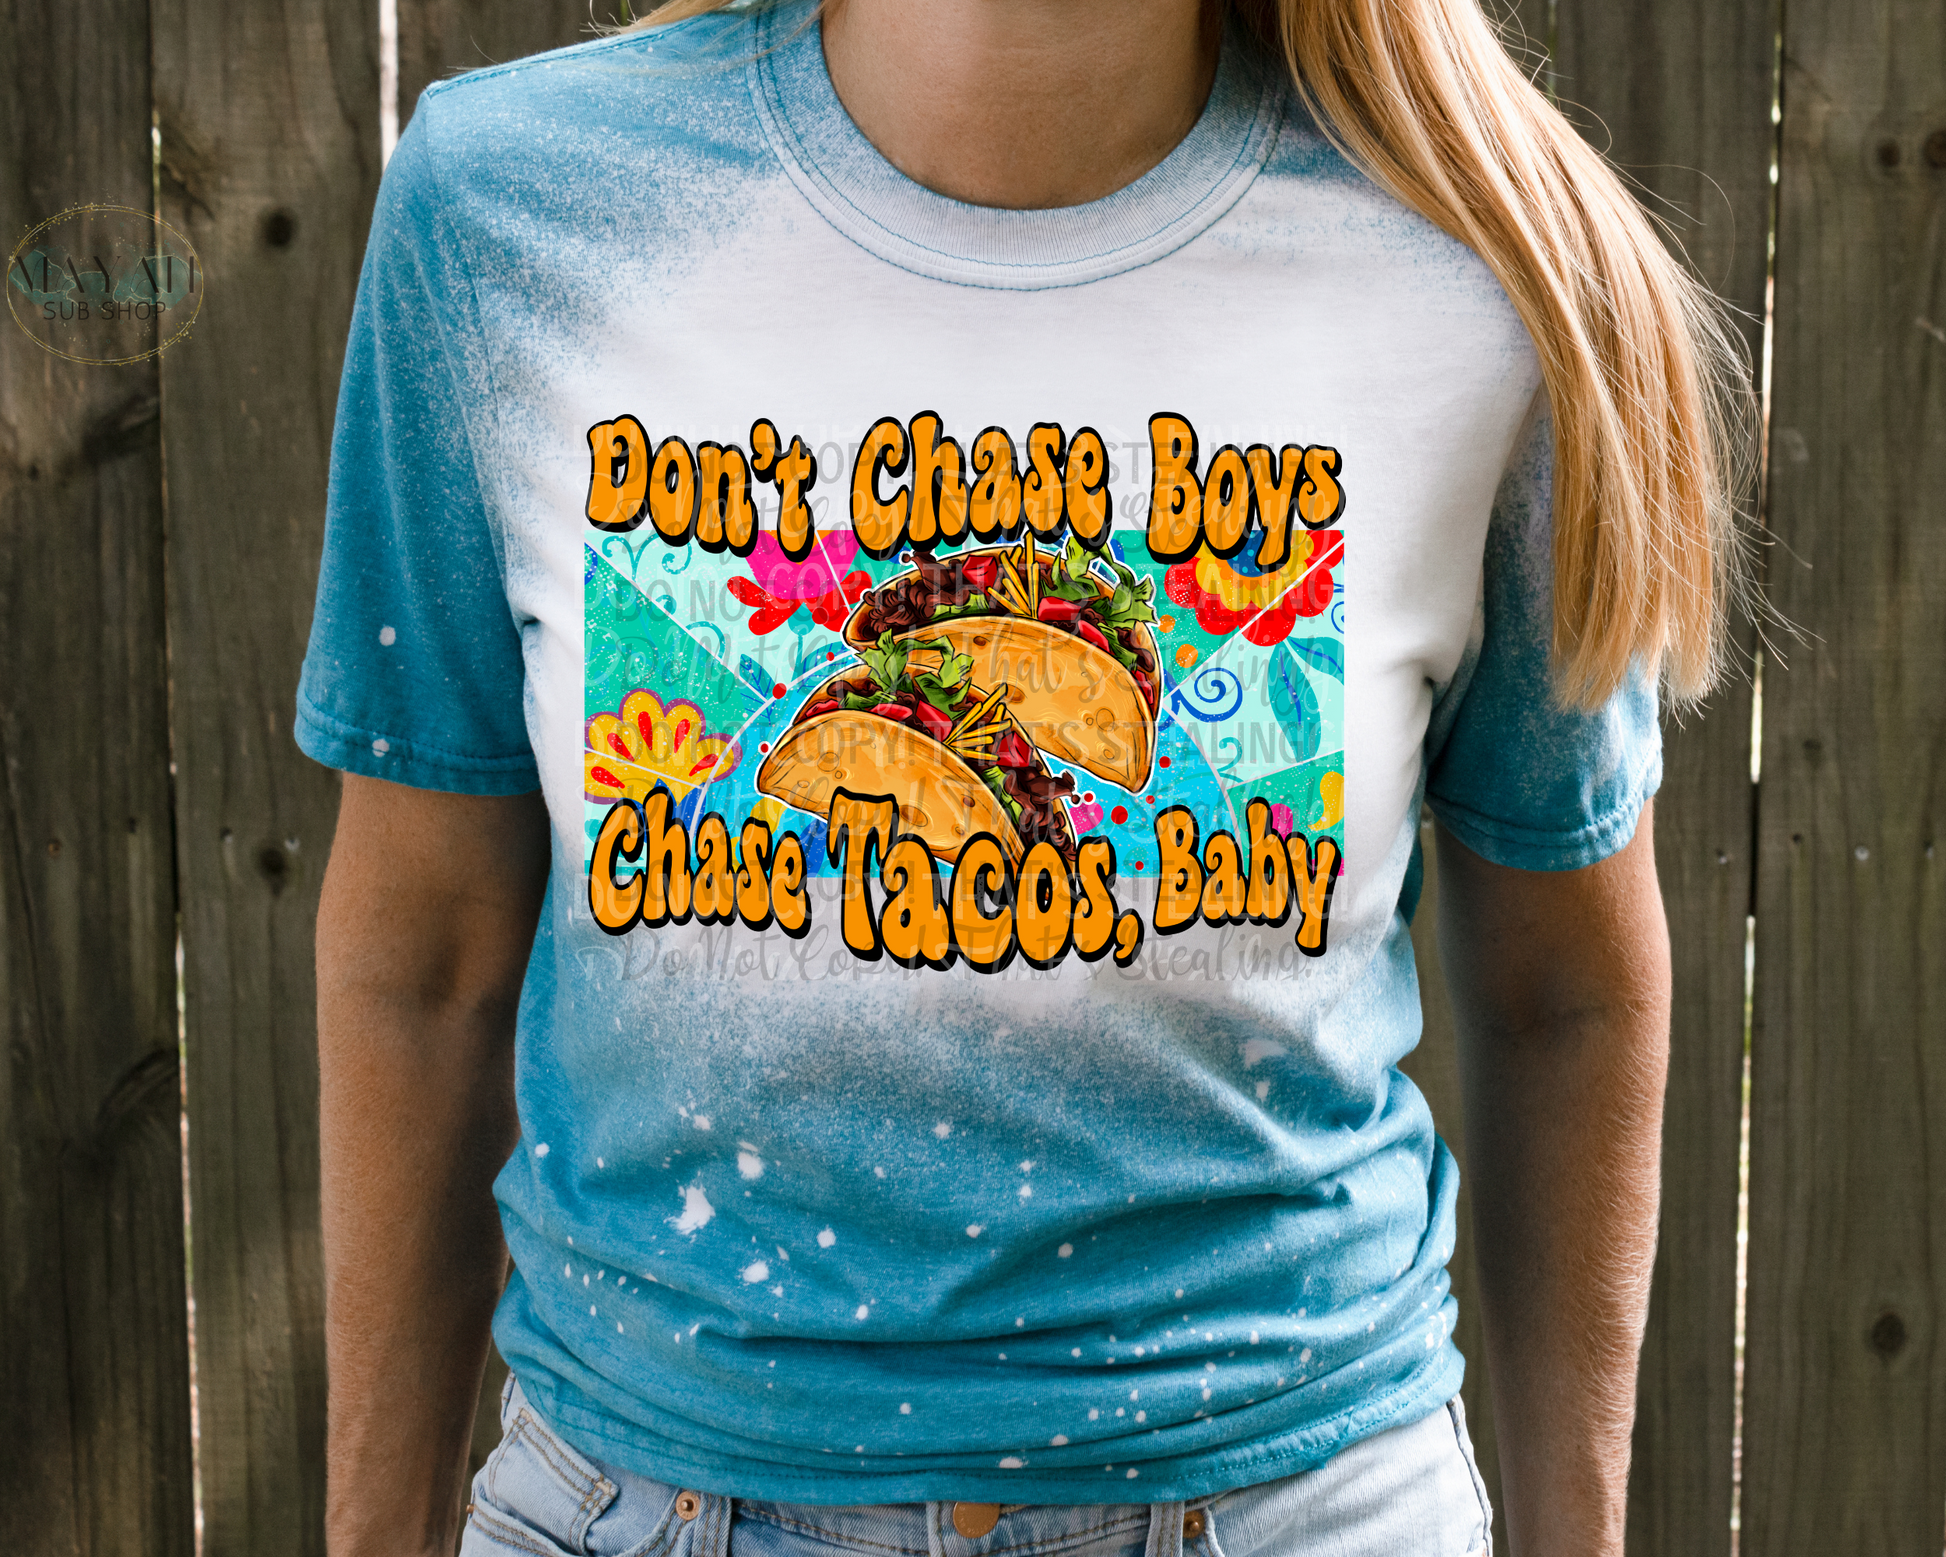 Chase tacos bleached shirt. -Mayan Sub Shop